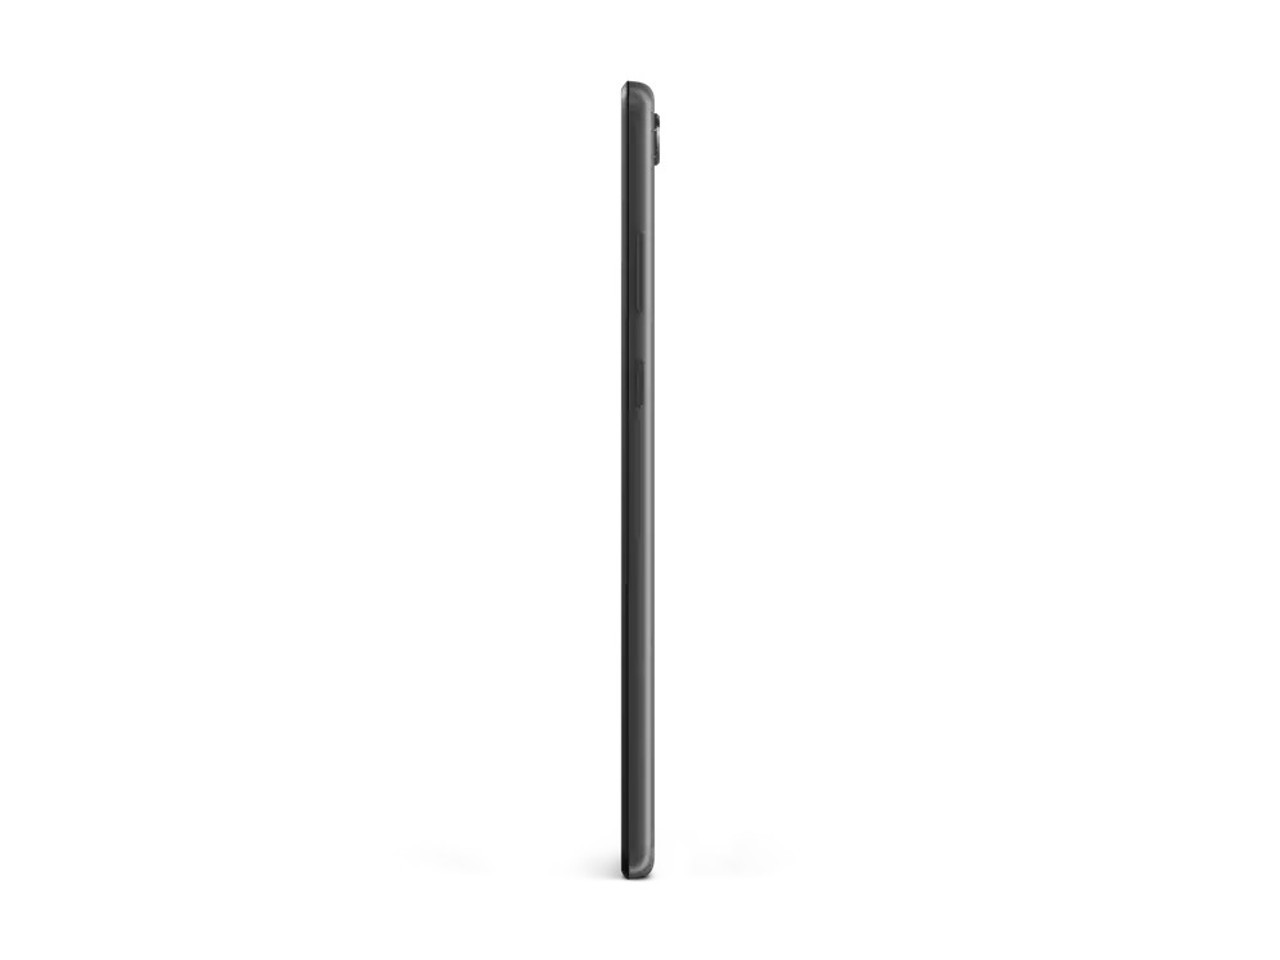 Lenovo Tab M8 (2nd Gen) 8" Tablet MediaTek Helio A22 2GB LPDDR3 32GB eMMC Android 9 | ZA5G0060US | Manufacturer Refurbished